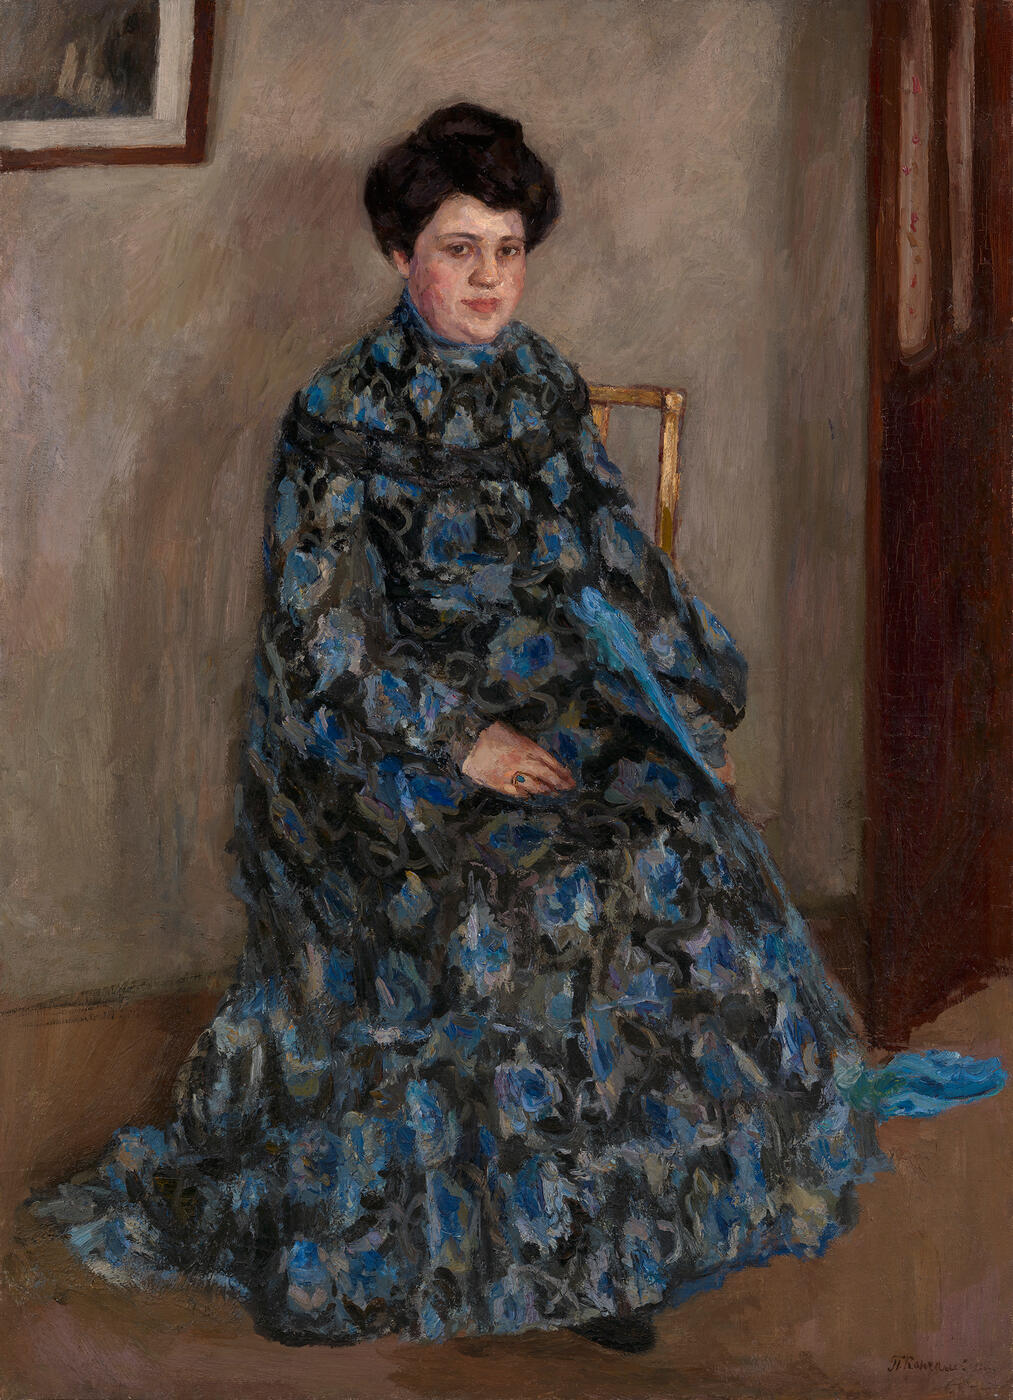 Portrait of the Artist’s Wife, Olga Vasilievna Konchalovskaya, in Tulle Dress